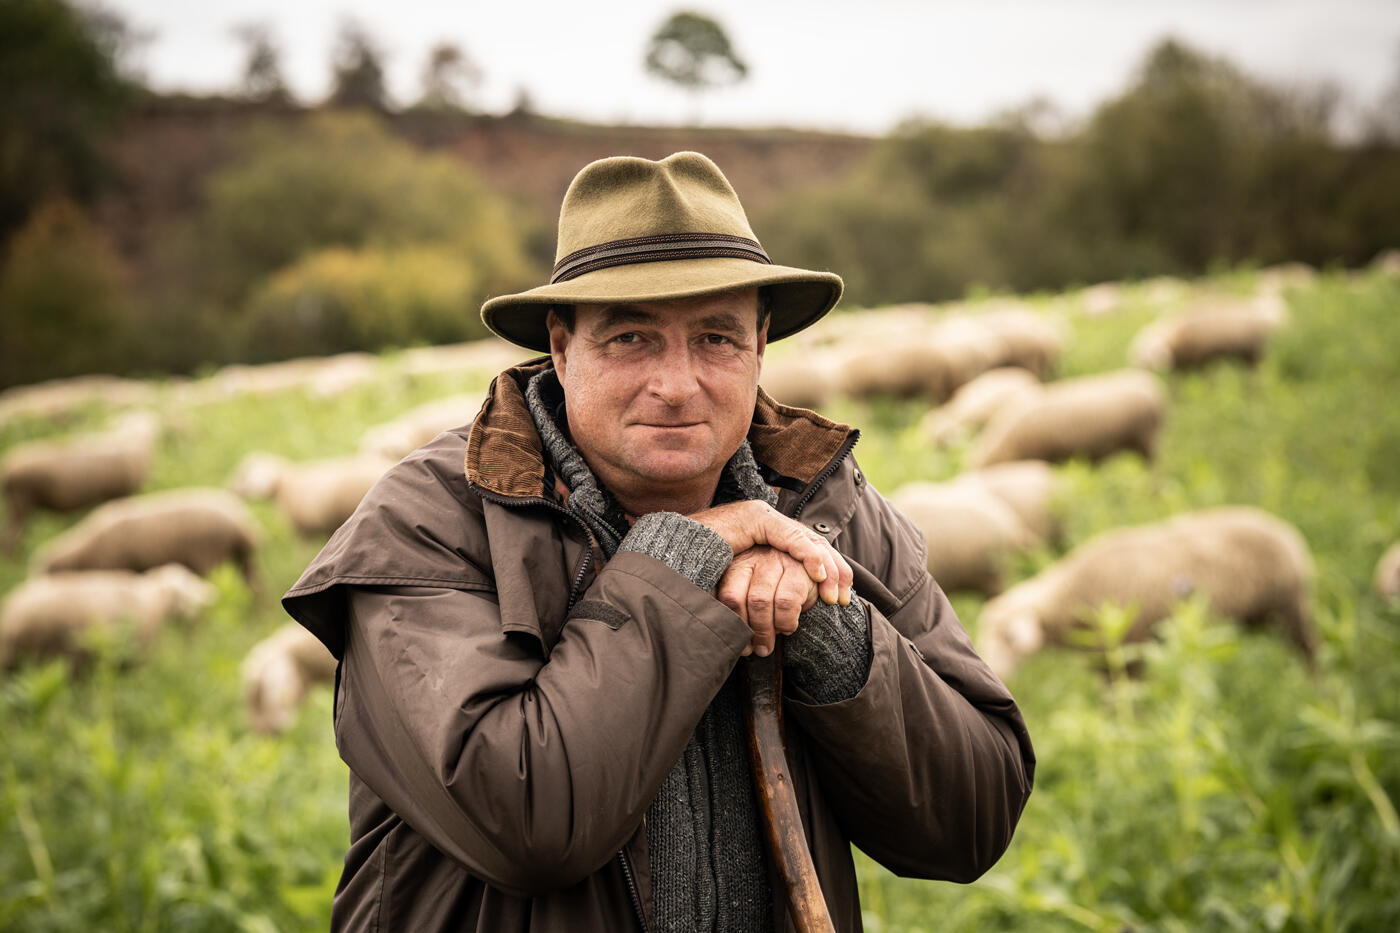 Mann mit Hut und Stock, der in einer Wiese steht. Im Hintergrund grasen Schafe.